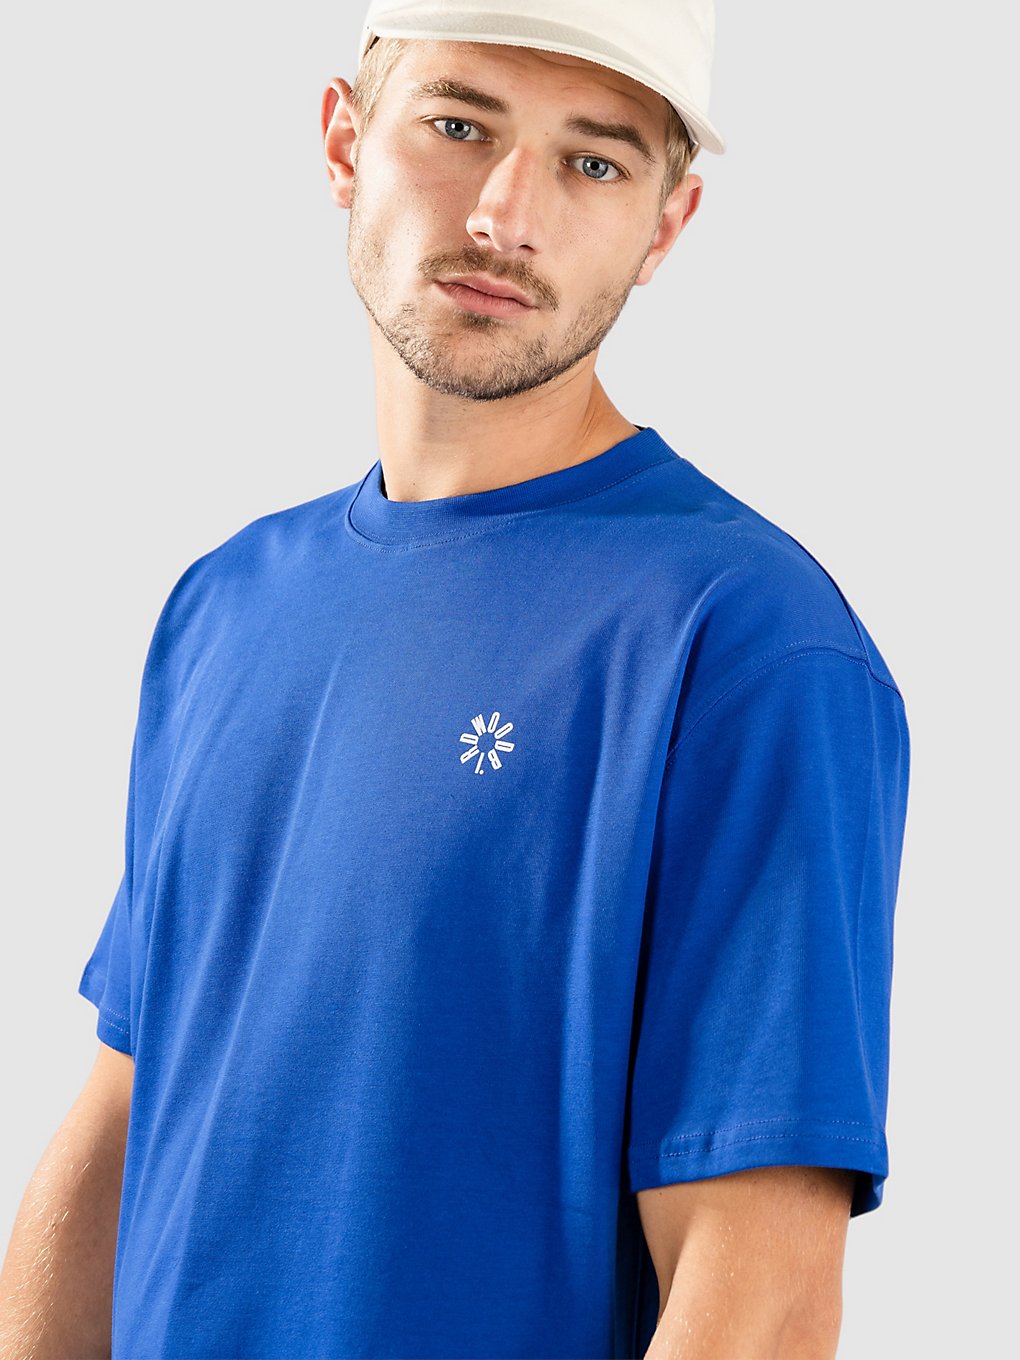 Woodbird Baine Star T-Shirt cobalt blue kaufen